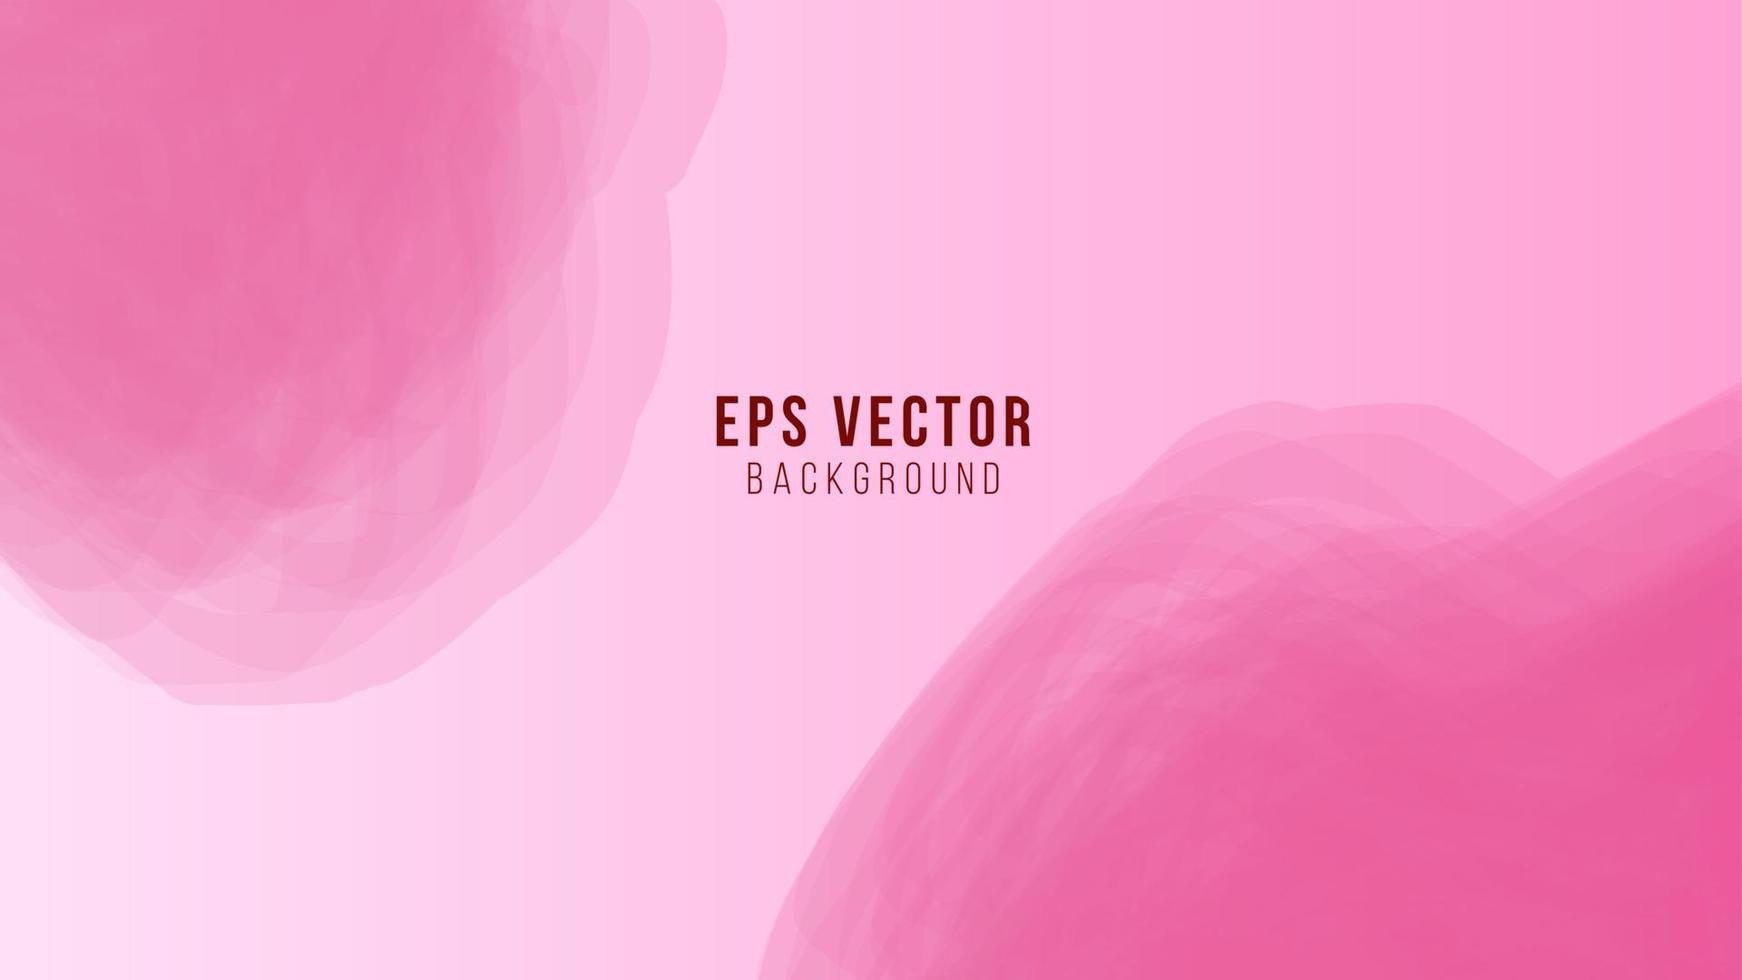 roze waterverf abstract achtergrond eps 10 vector voor illustratie, poster, folder, sociaal media sjabloon, website